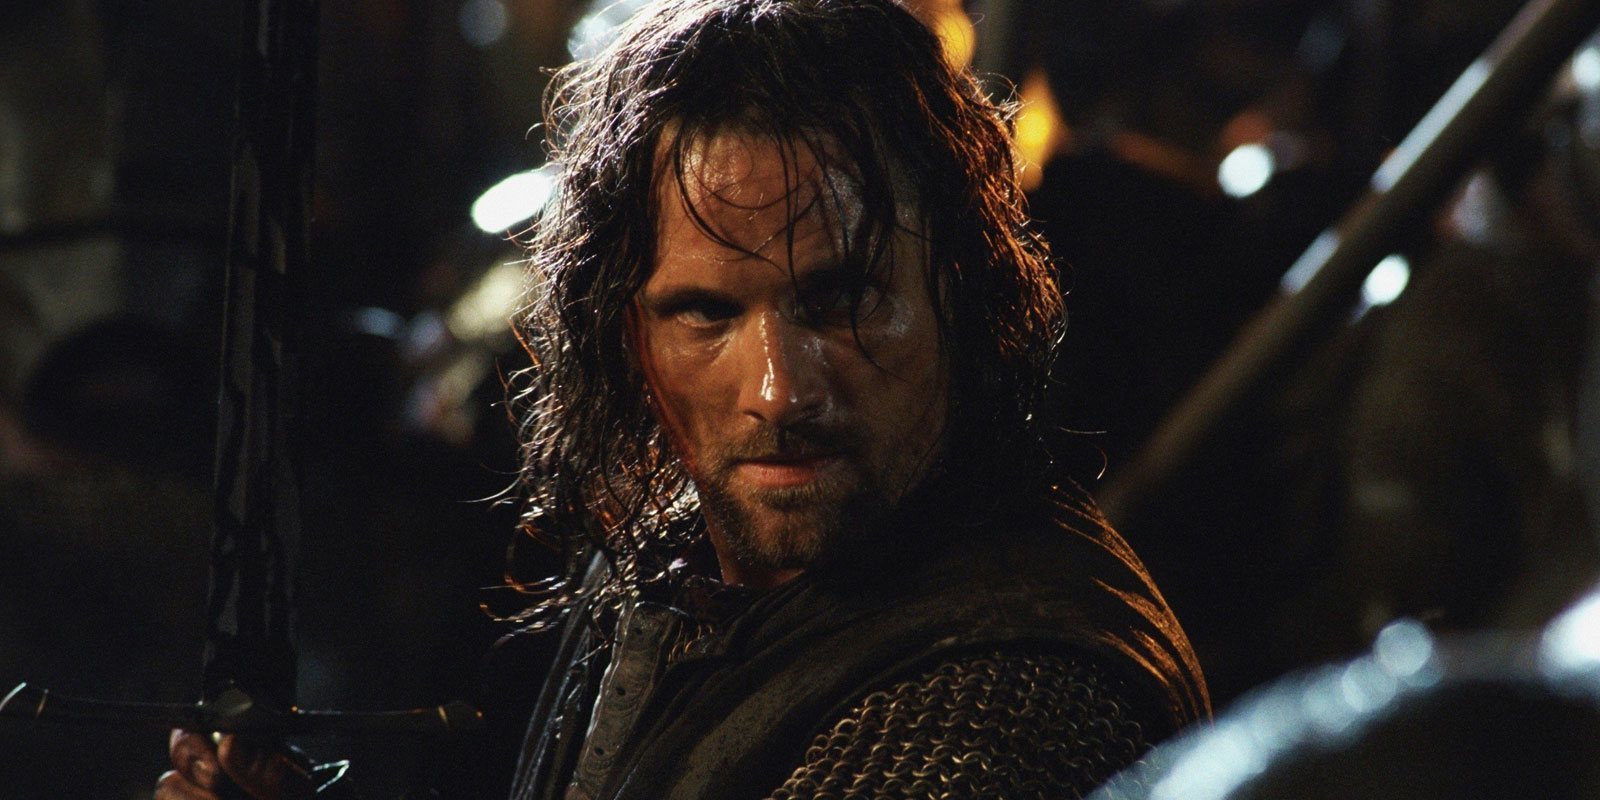 La serie de Amazon basada en 'El señor de los anillos' comenzará con Aragorn de joven